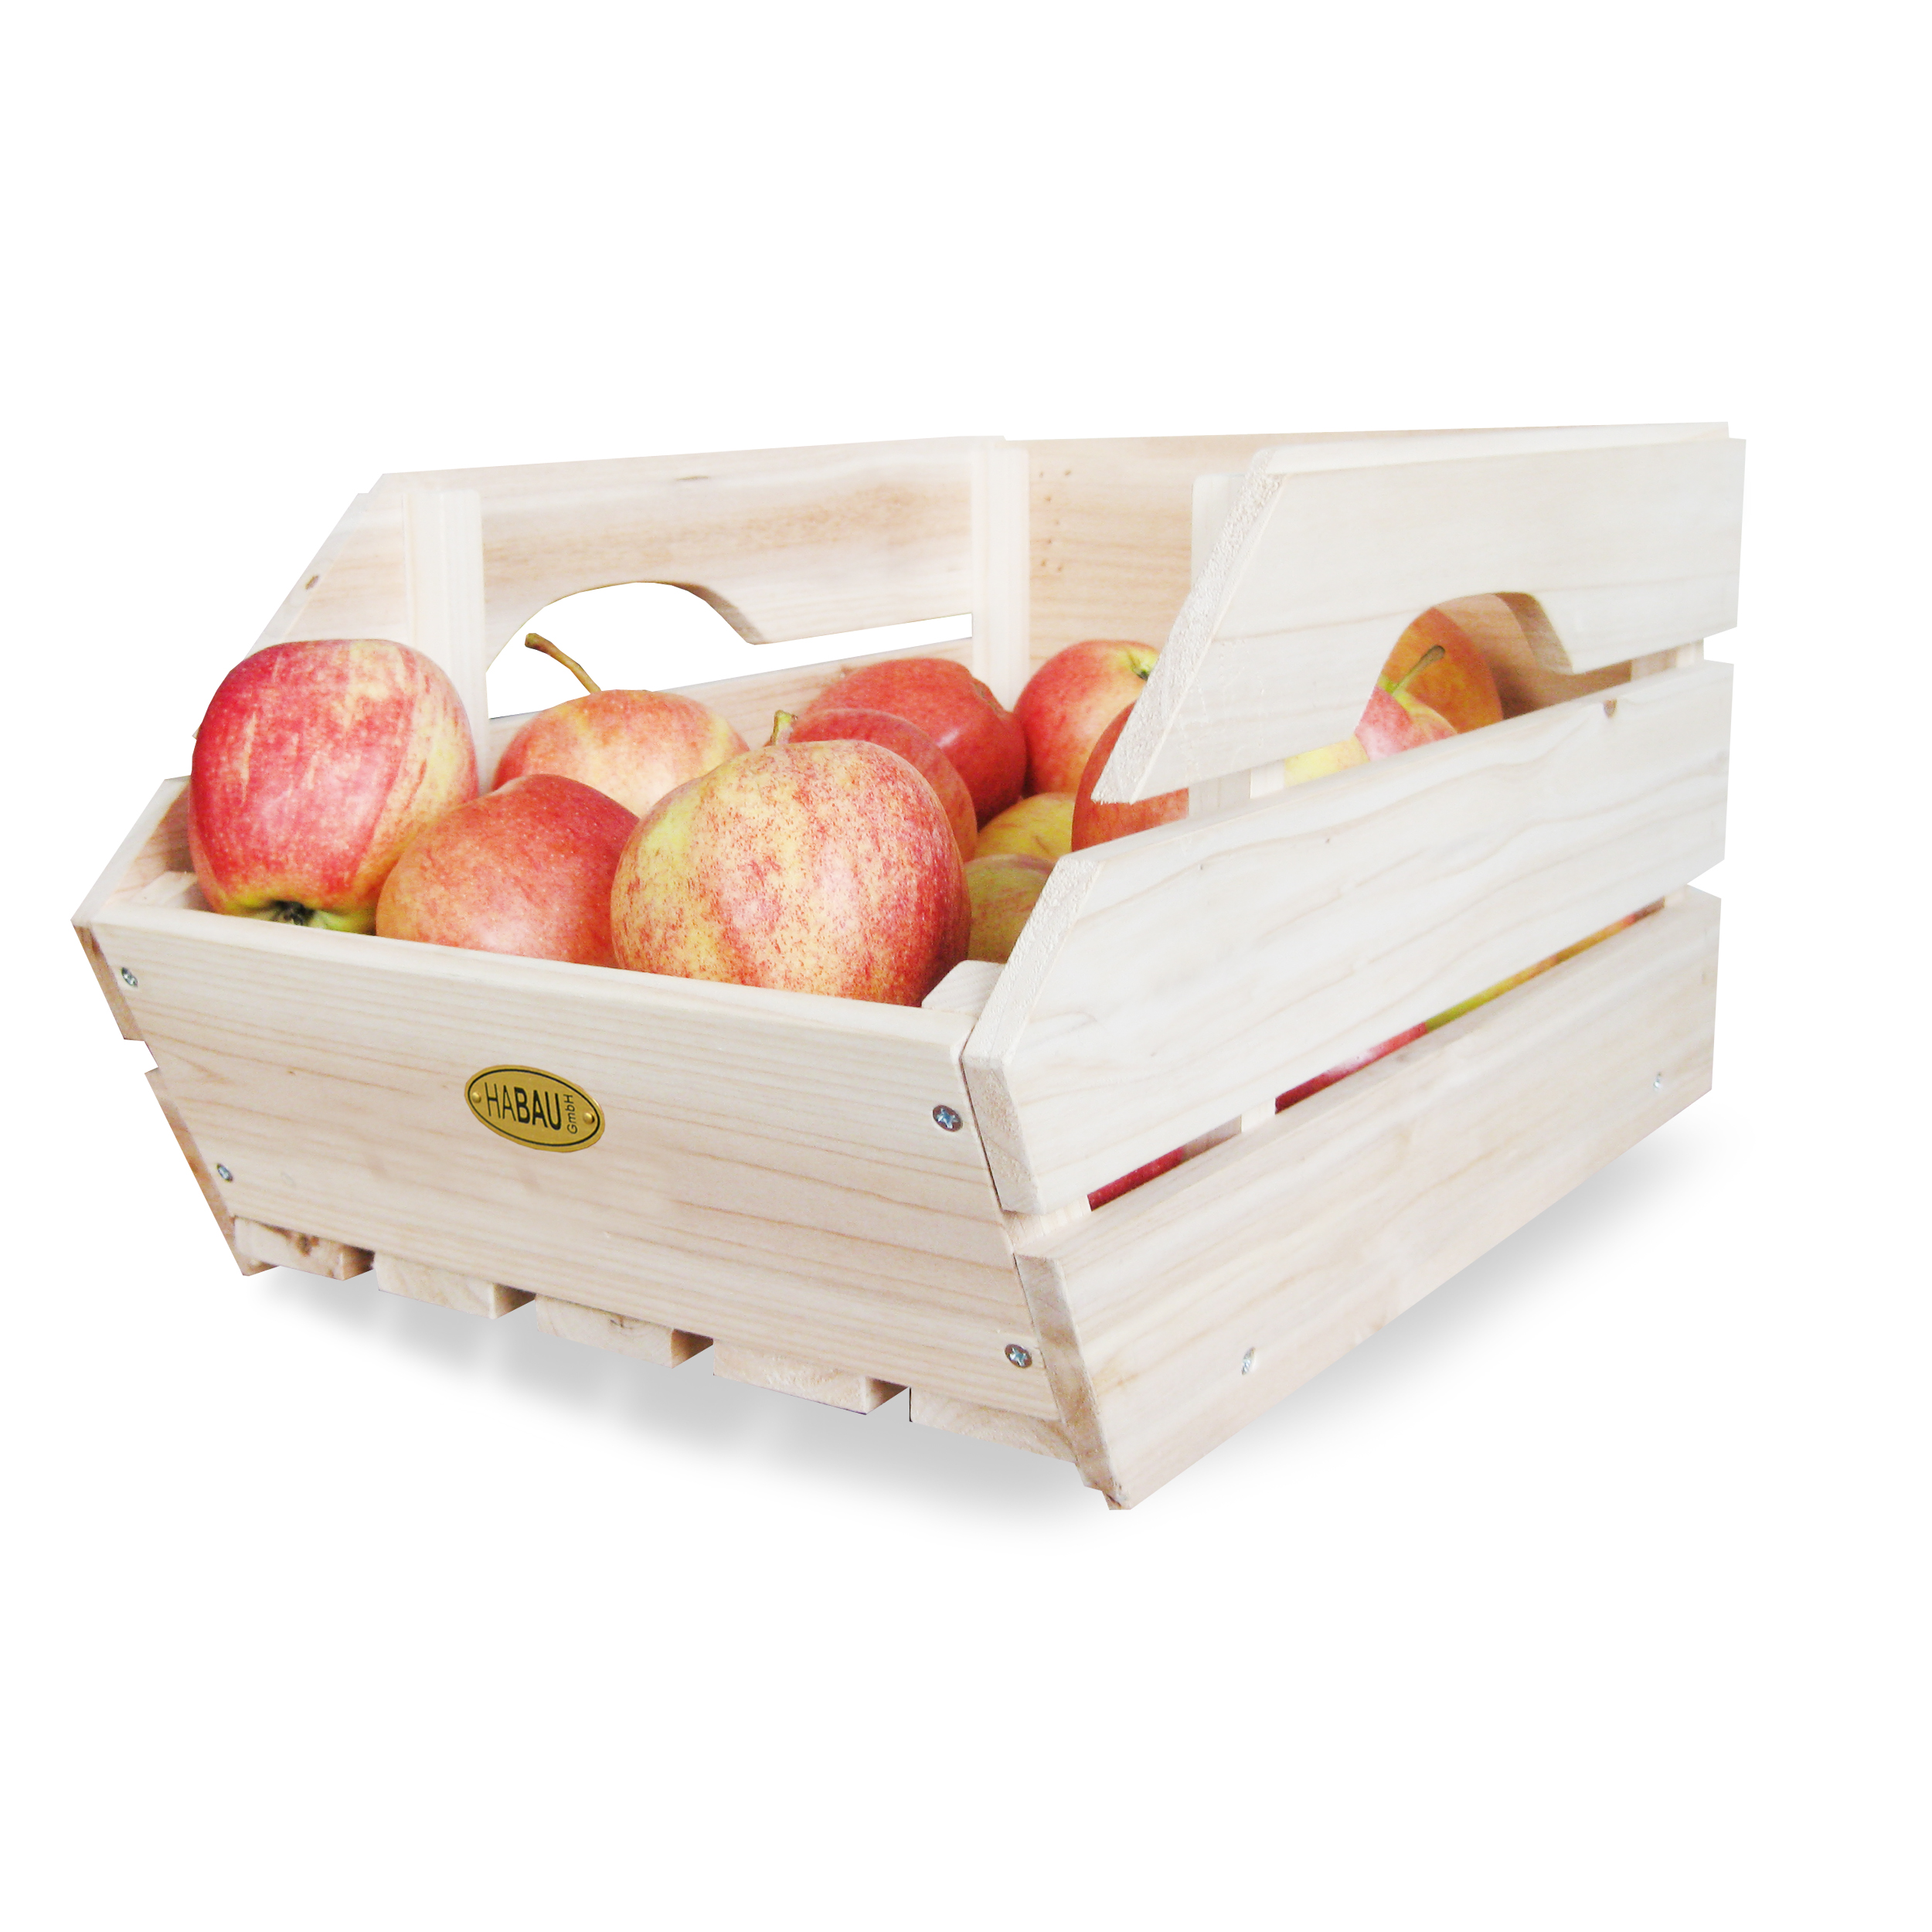 Anwendungsbeispiel für Stapelkiste mit Äpfeln